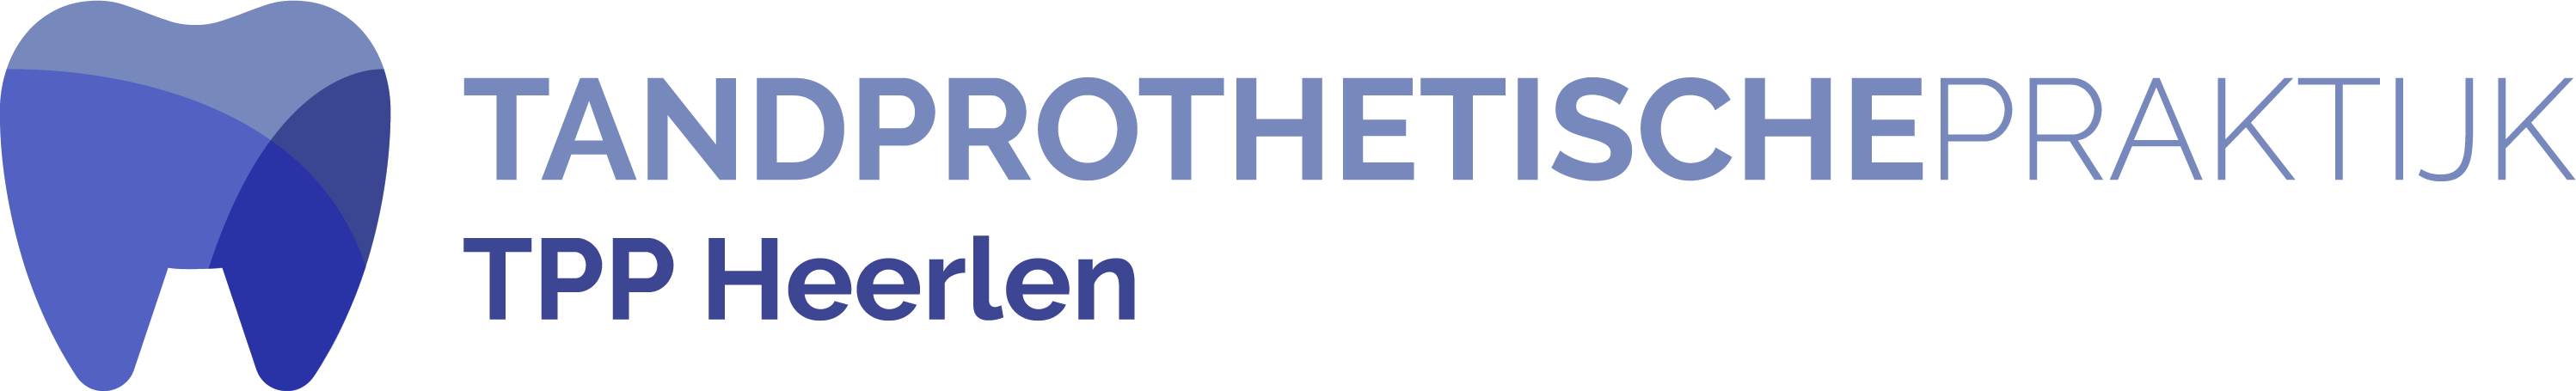 Logo_TPPHeerlen.png